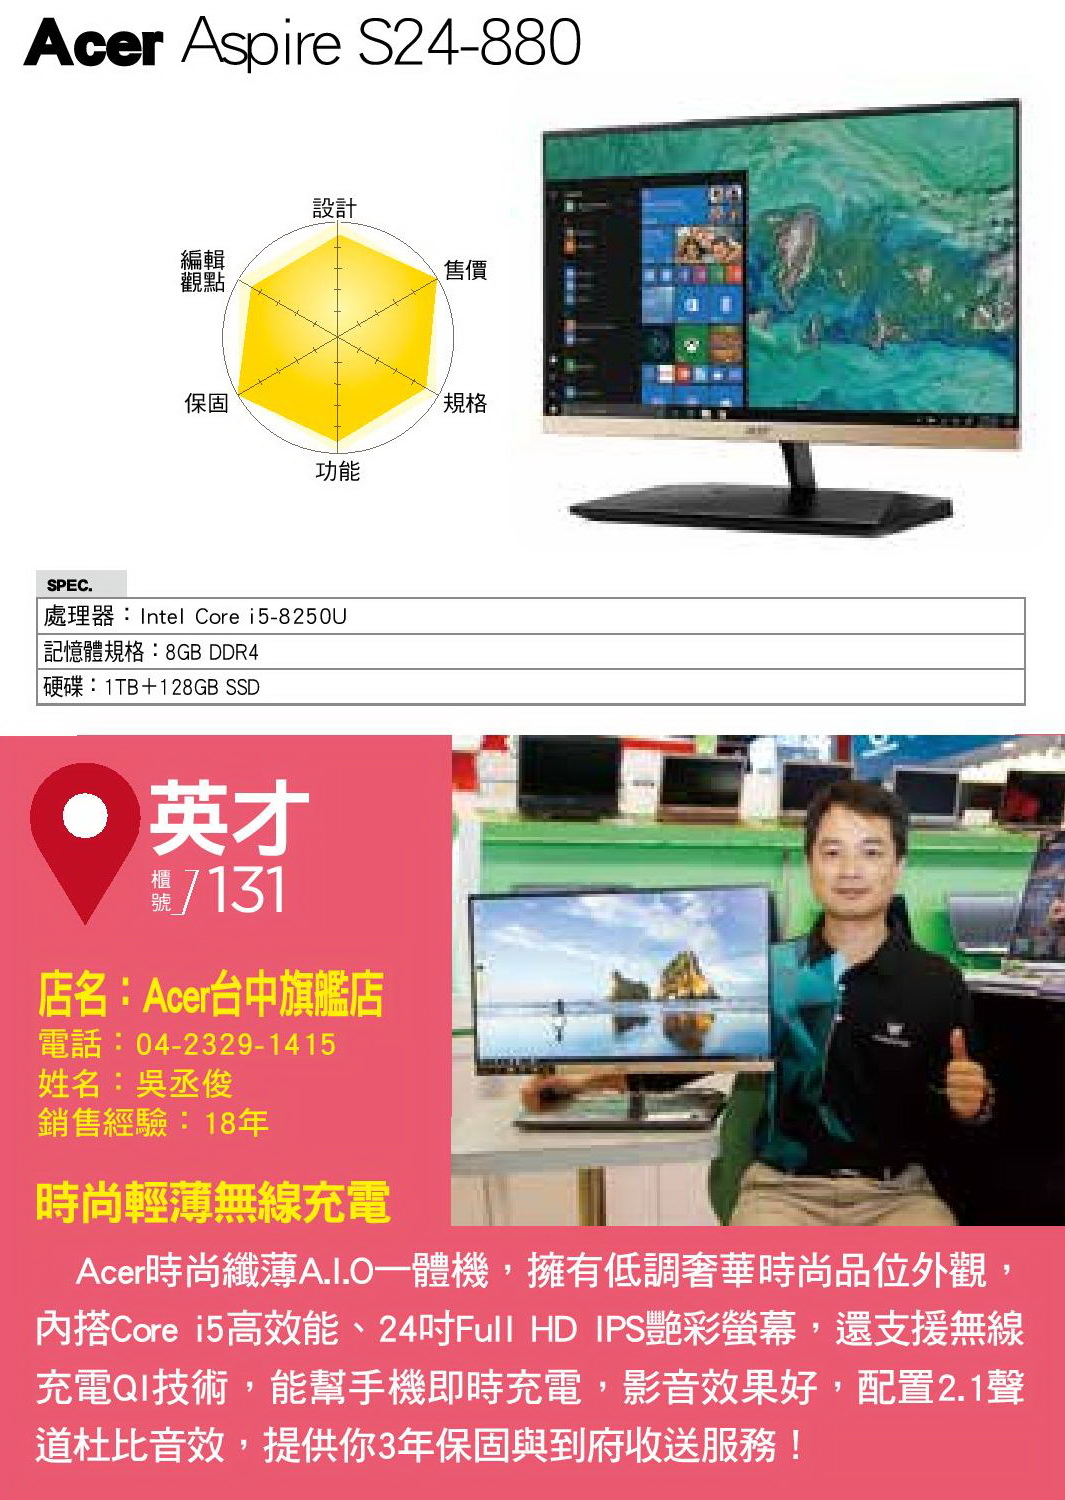 Acer Aspire S24-880.jpg